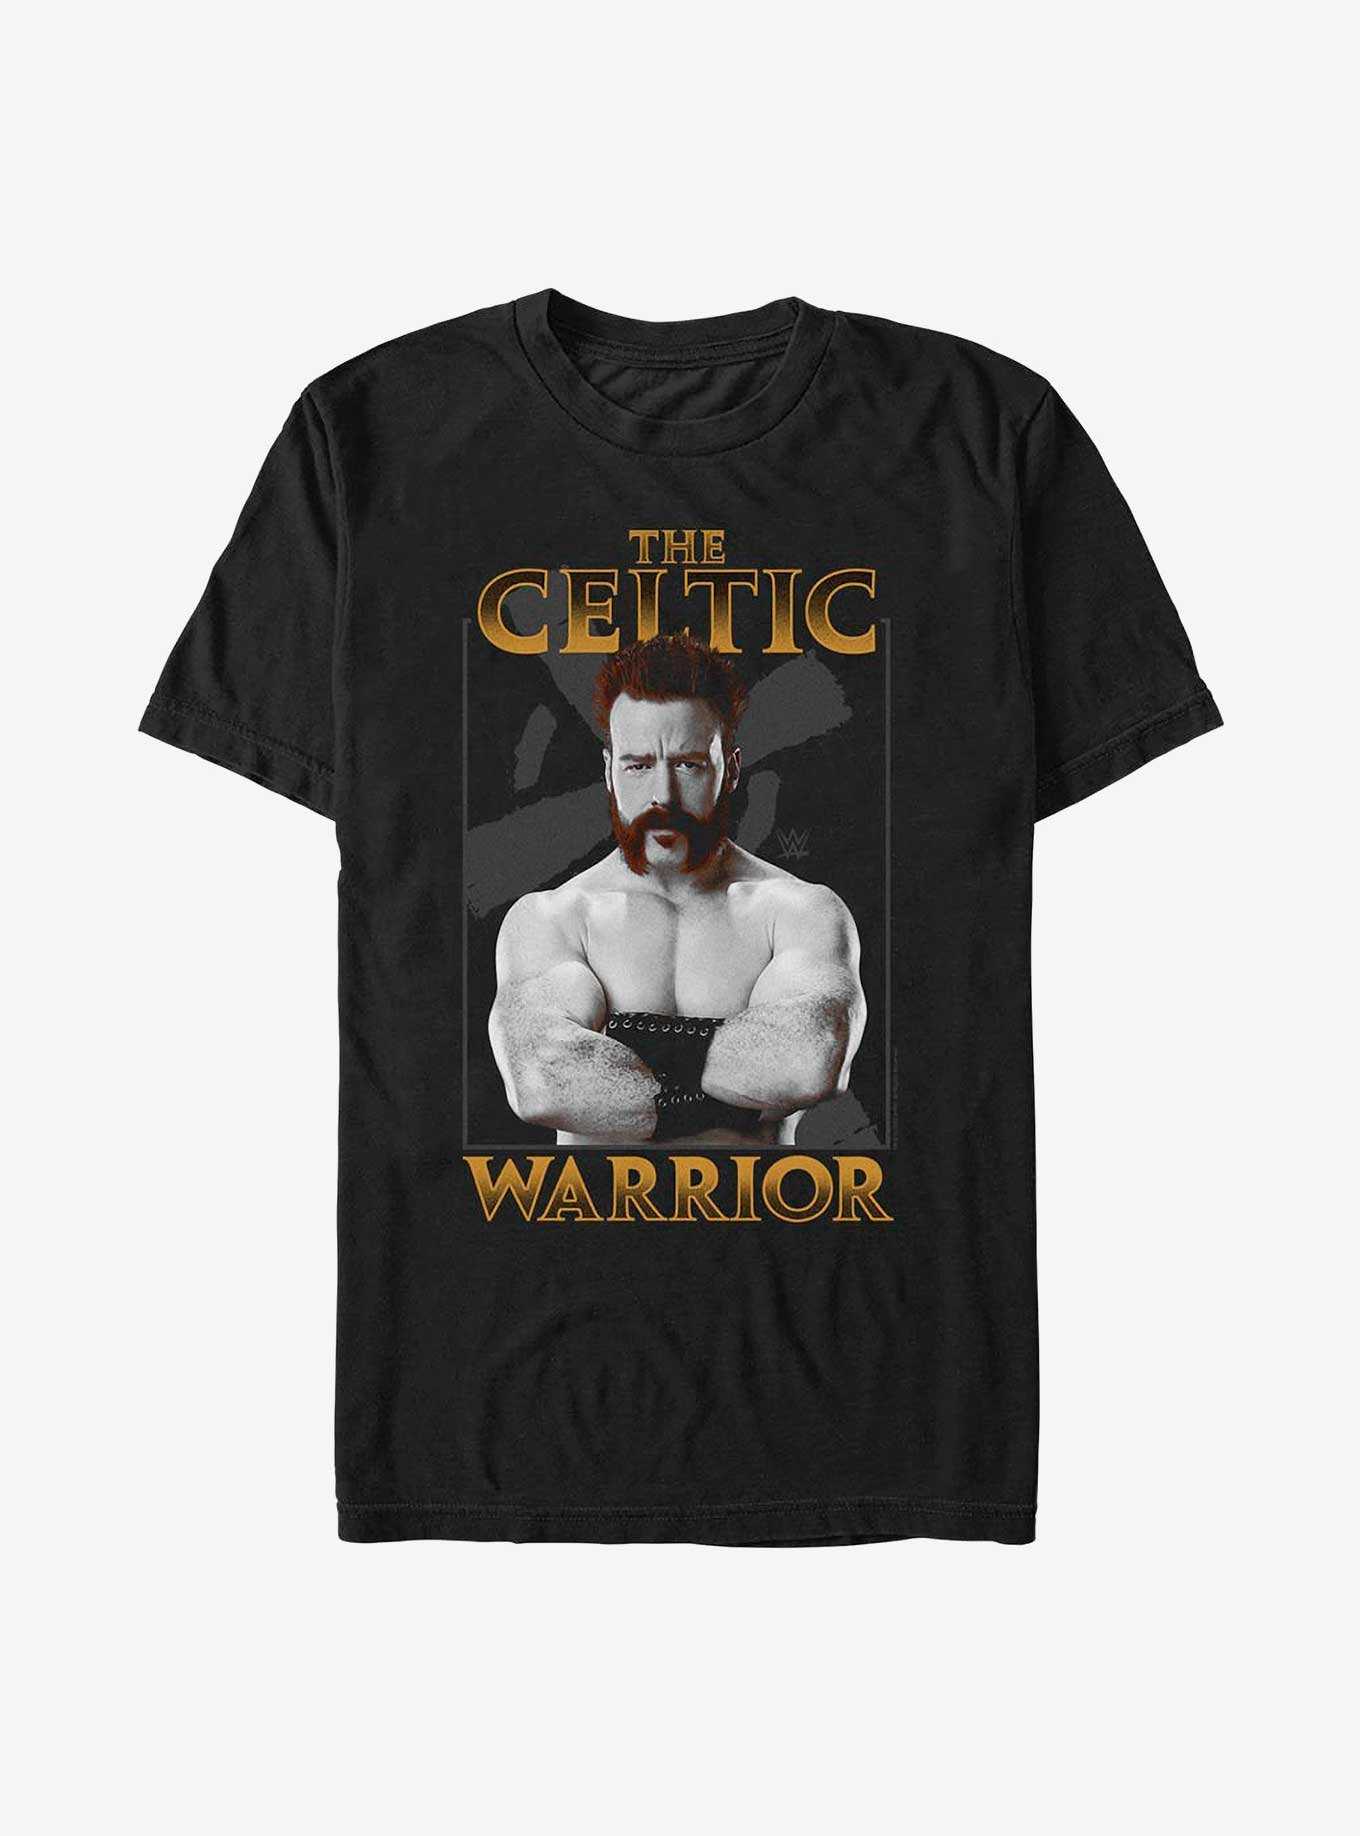 WWE Sheamus Celtic Warrior Portrait T-Shirt, , hi-res